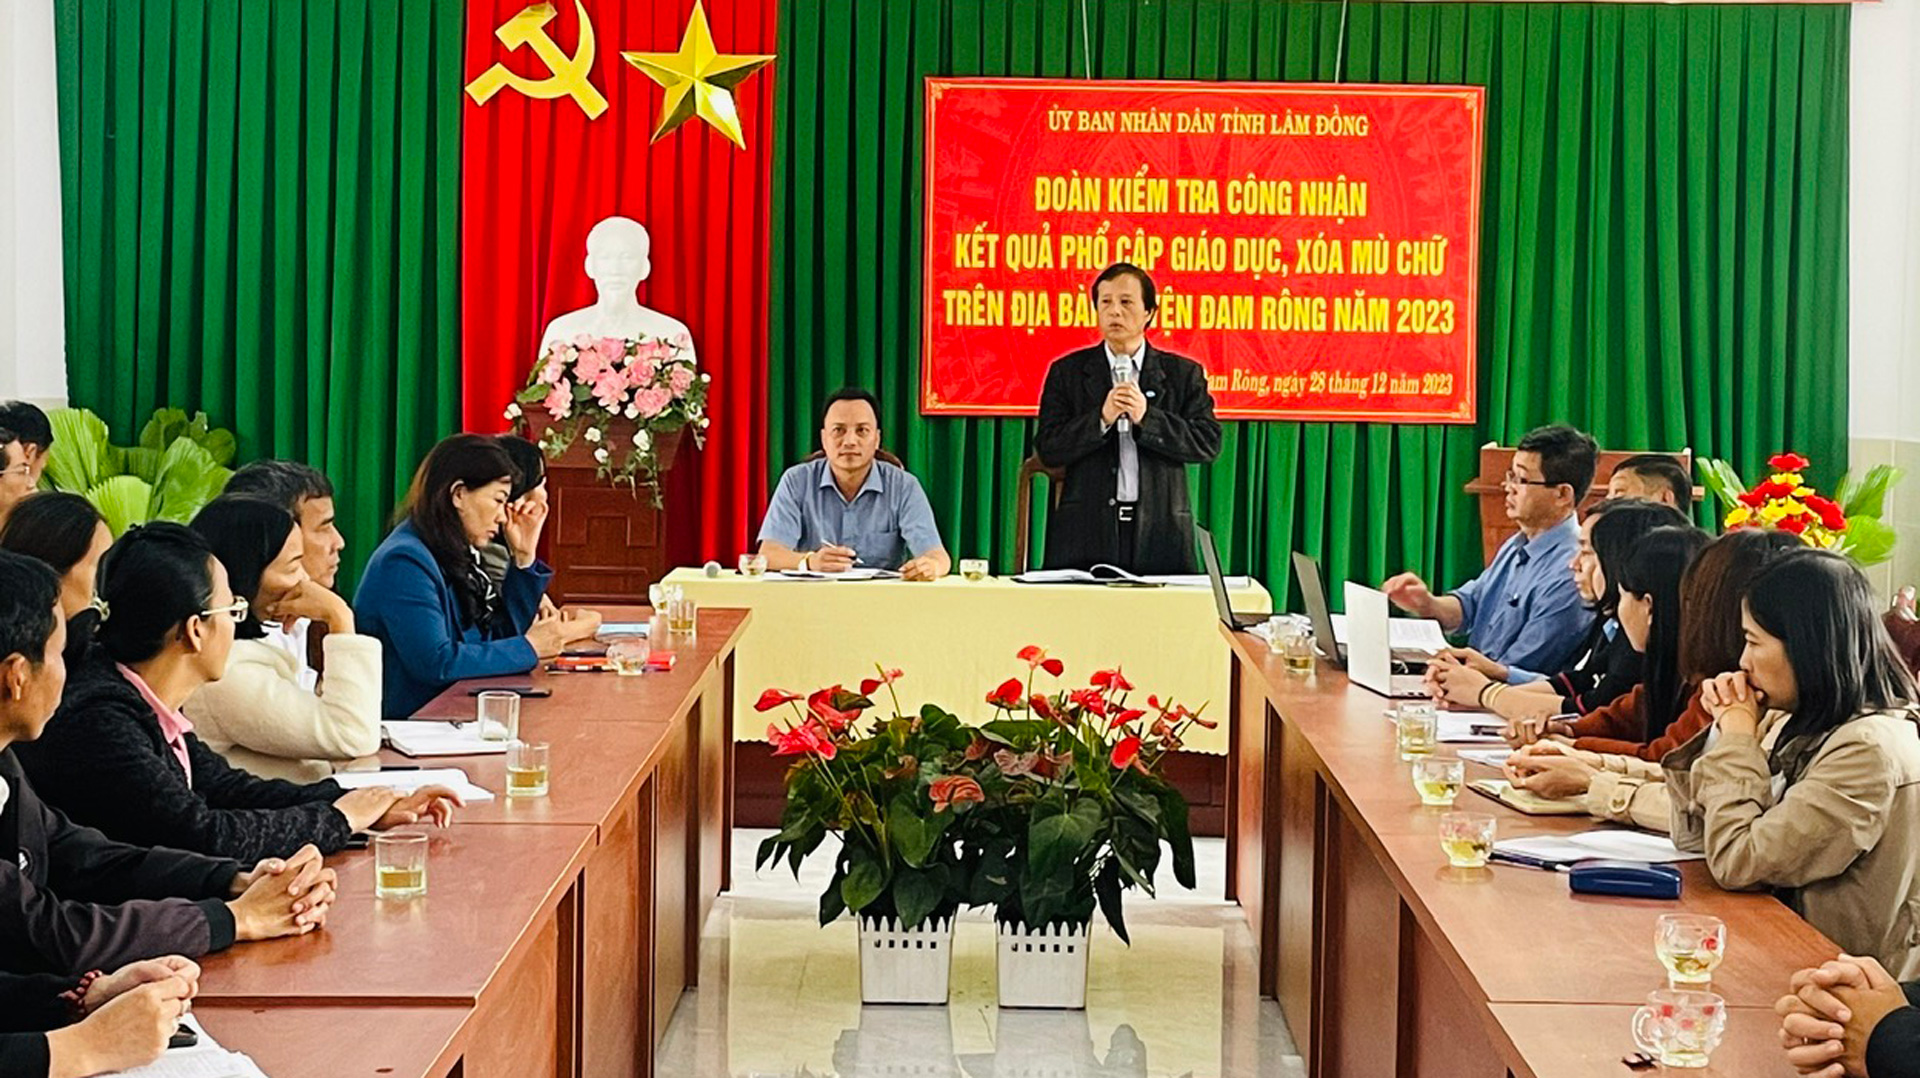 Đoàn kiểm tra công nhận phổ cập giáo dục, xóa mù chữ (PCGD – XMC) năm 2023 của Sở GD&ĐT Lâm Đồng đã kiểm tra tại huyện Đam Rông